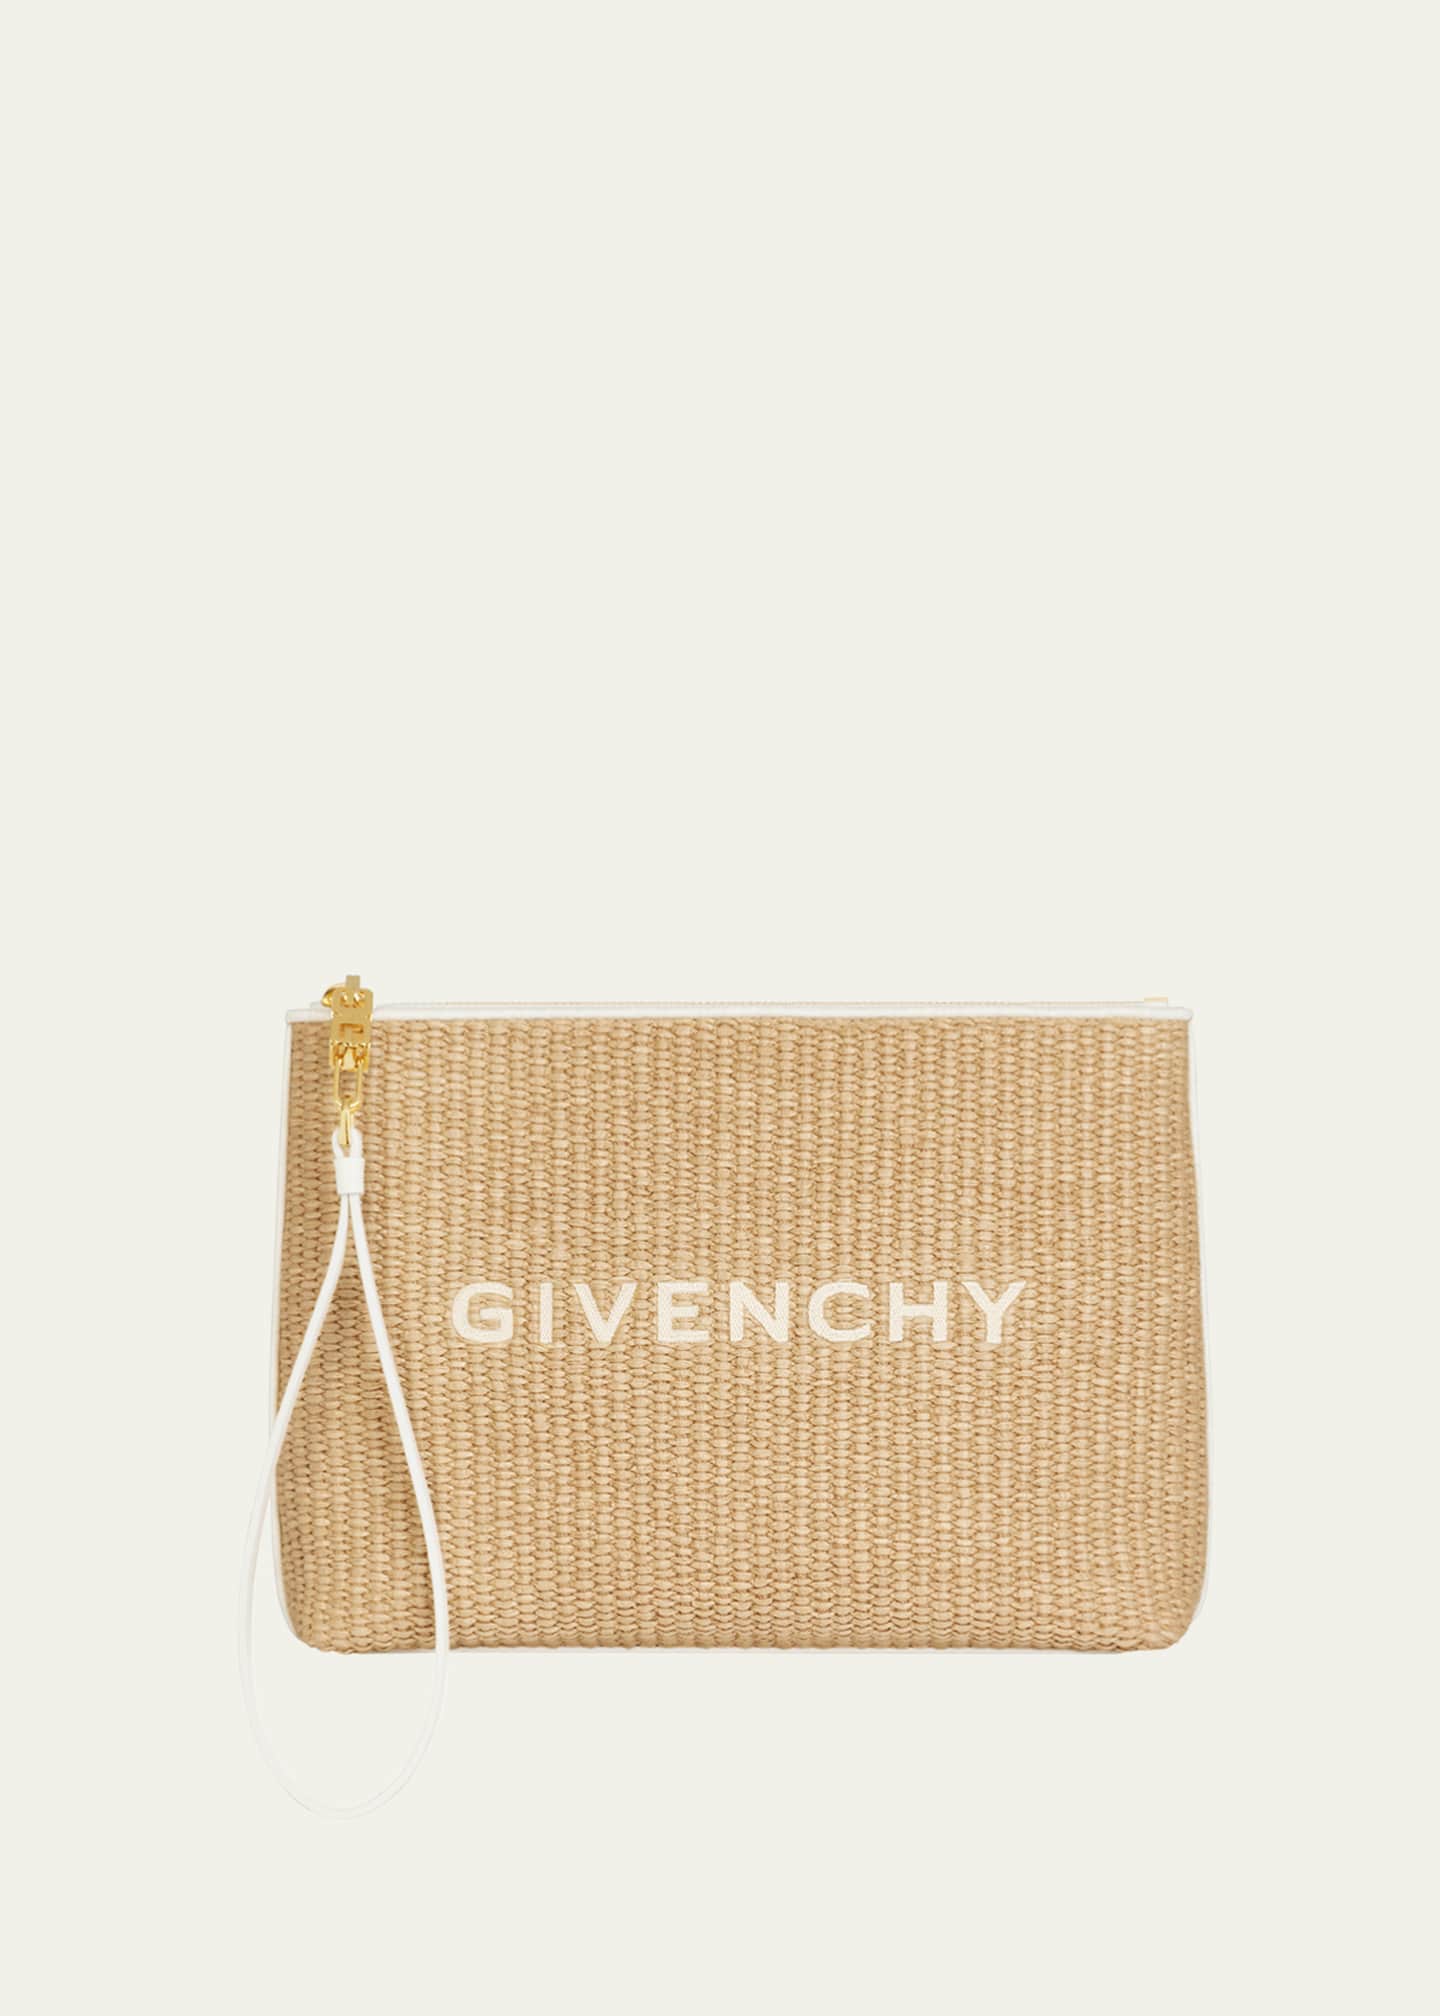 Givenchy Shark Medium Clutch Bag